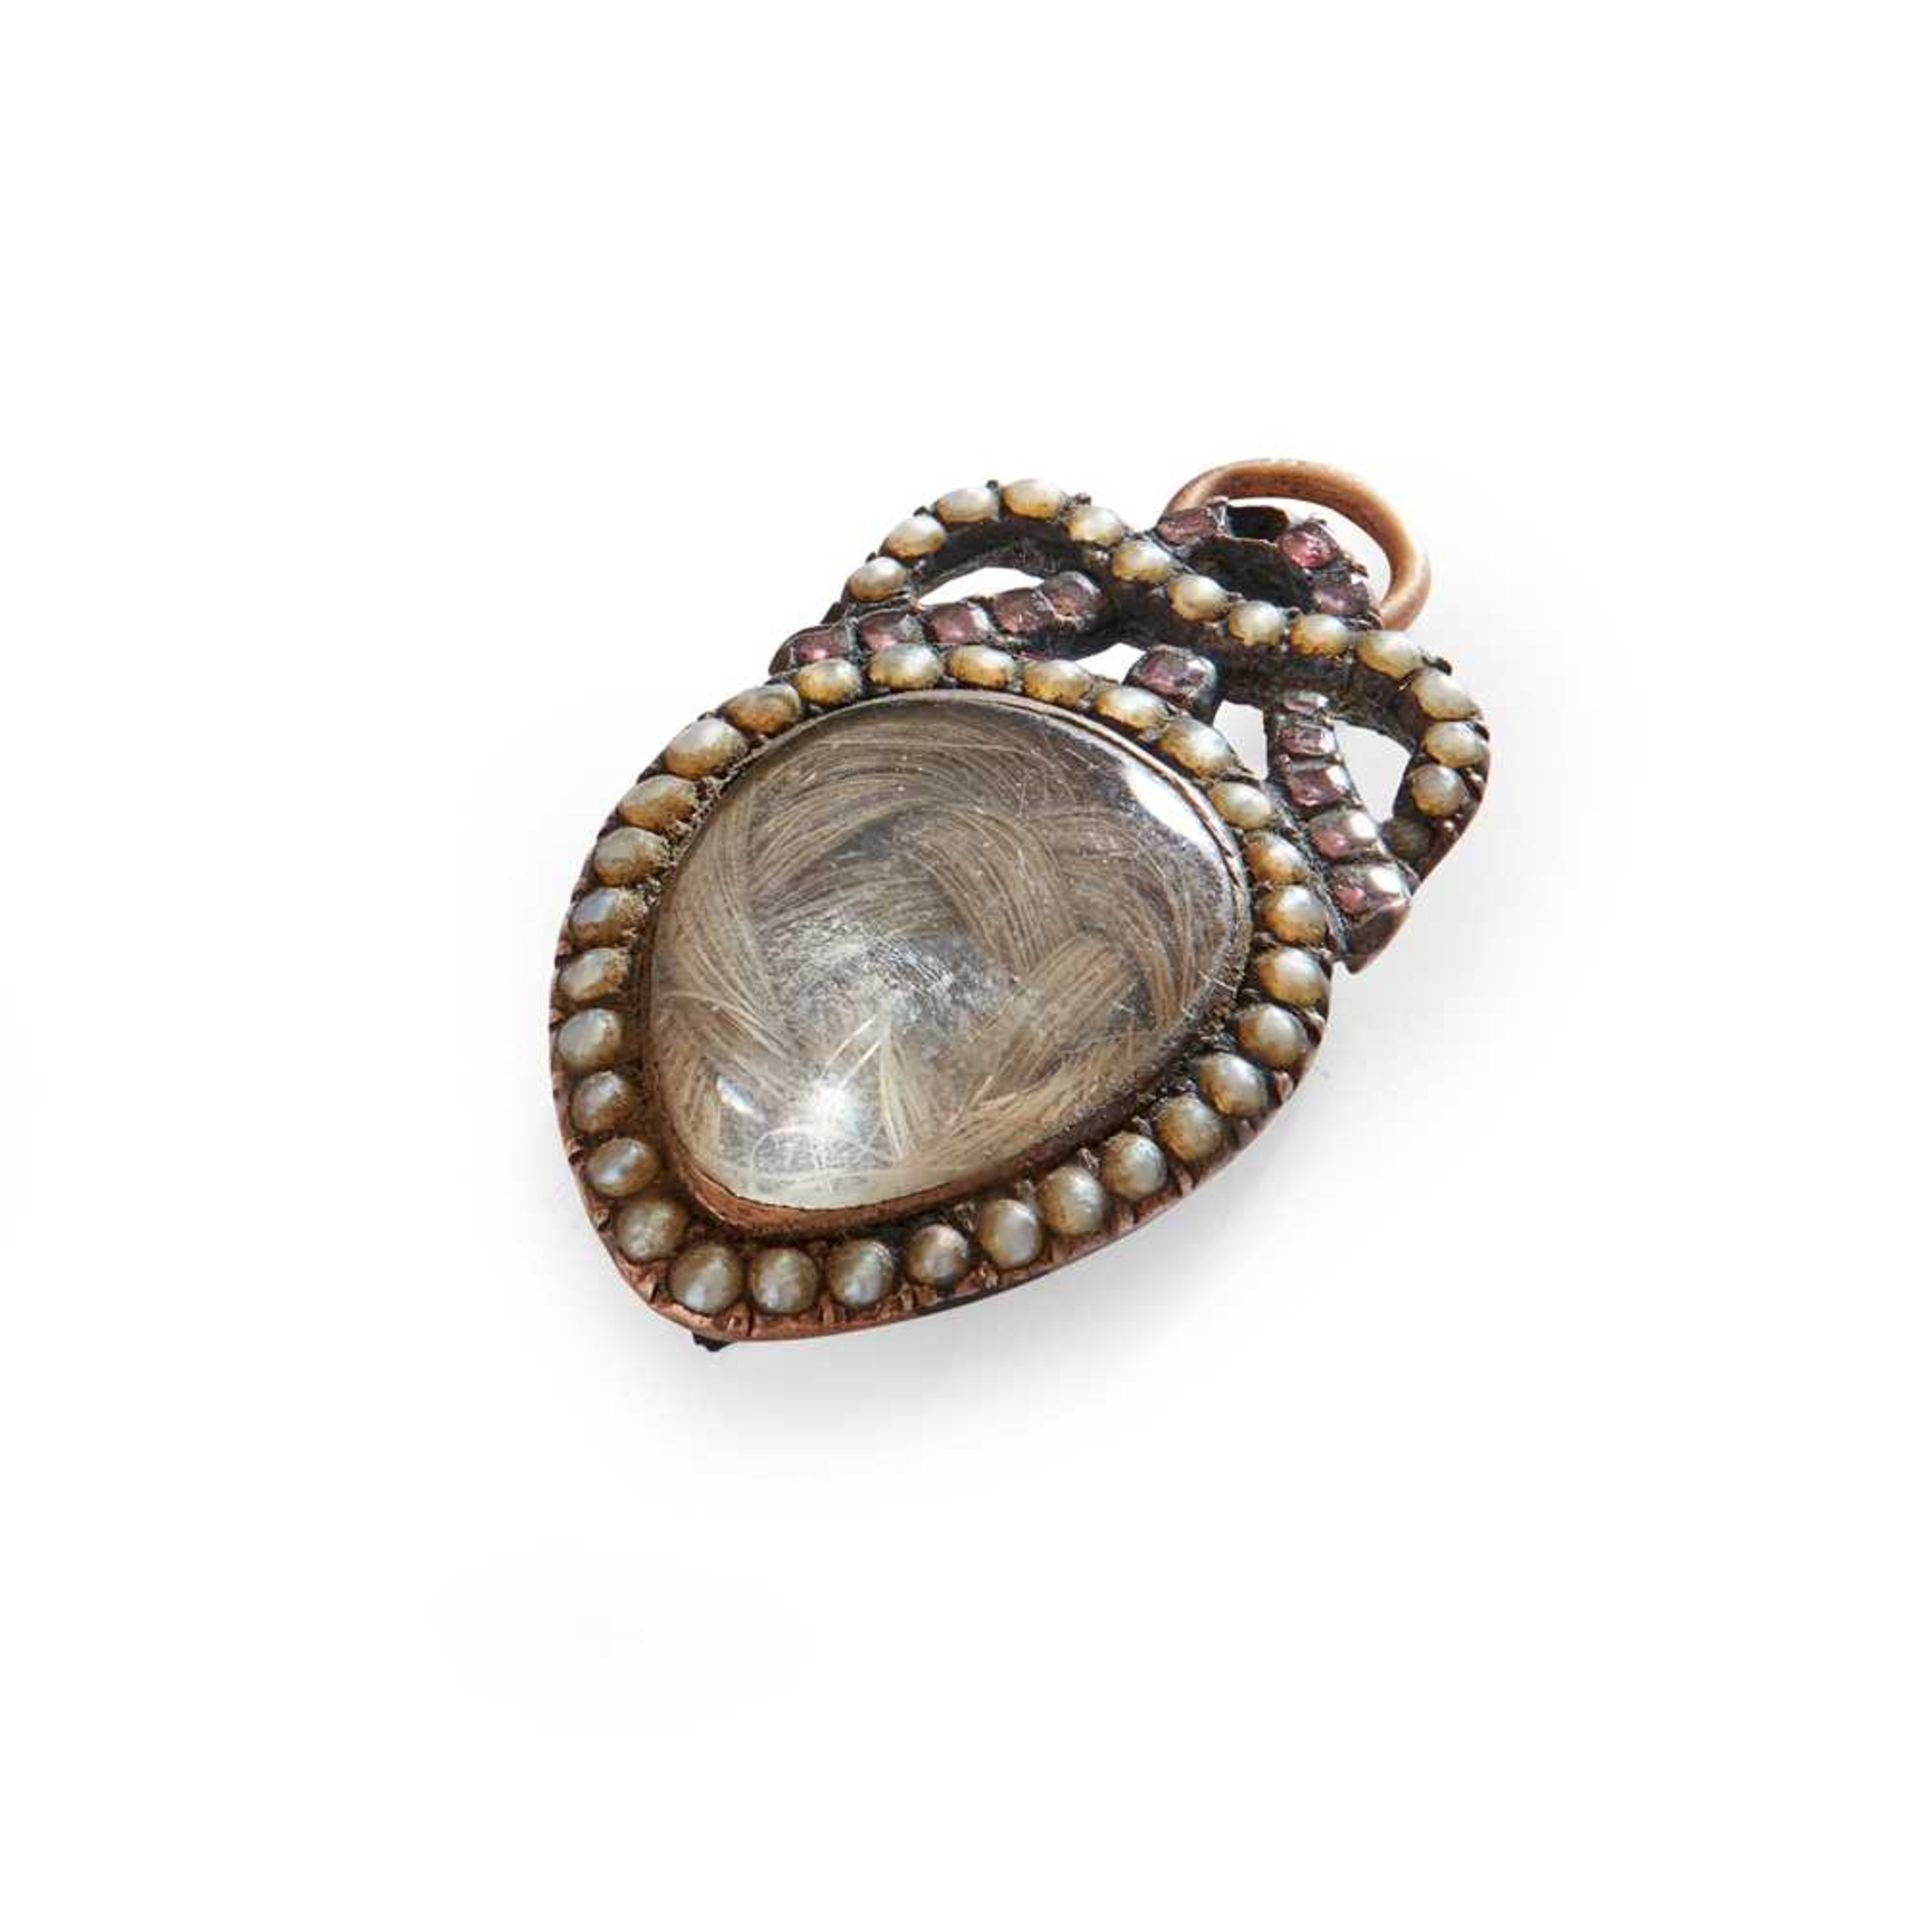 JACOBITE INTEREST - A mid/late 18th century gem-set pendant